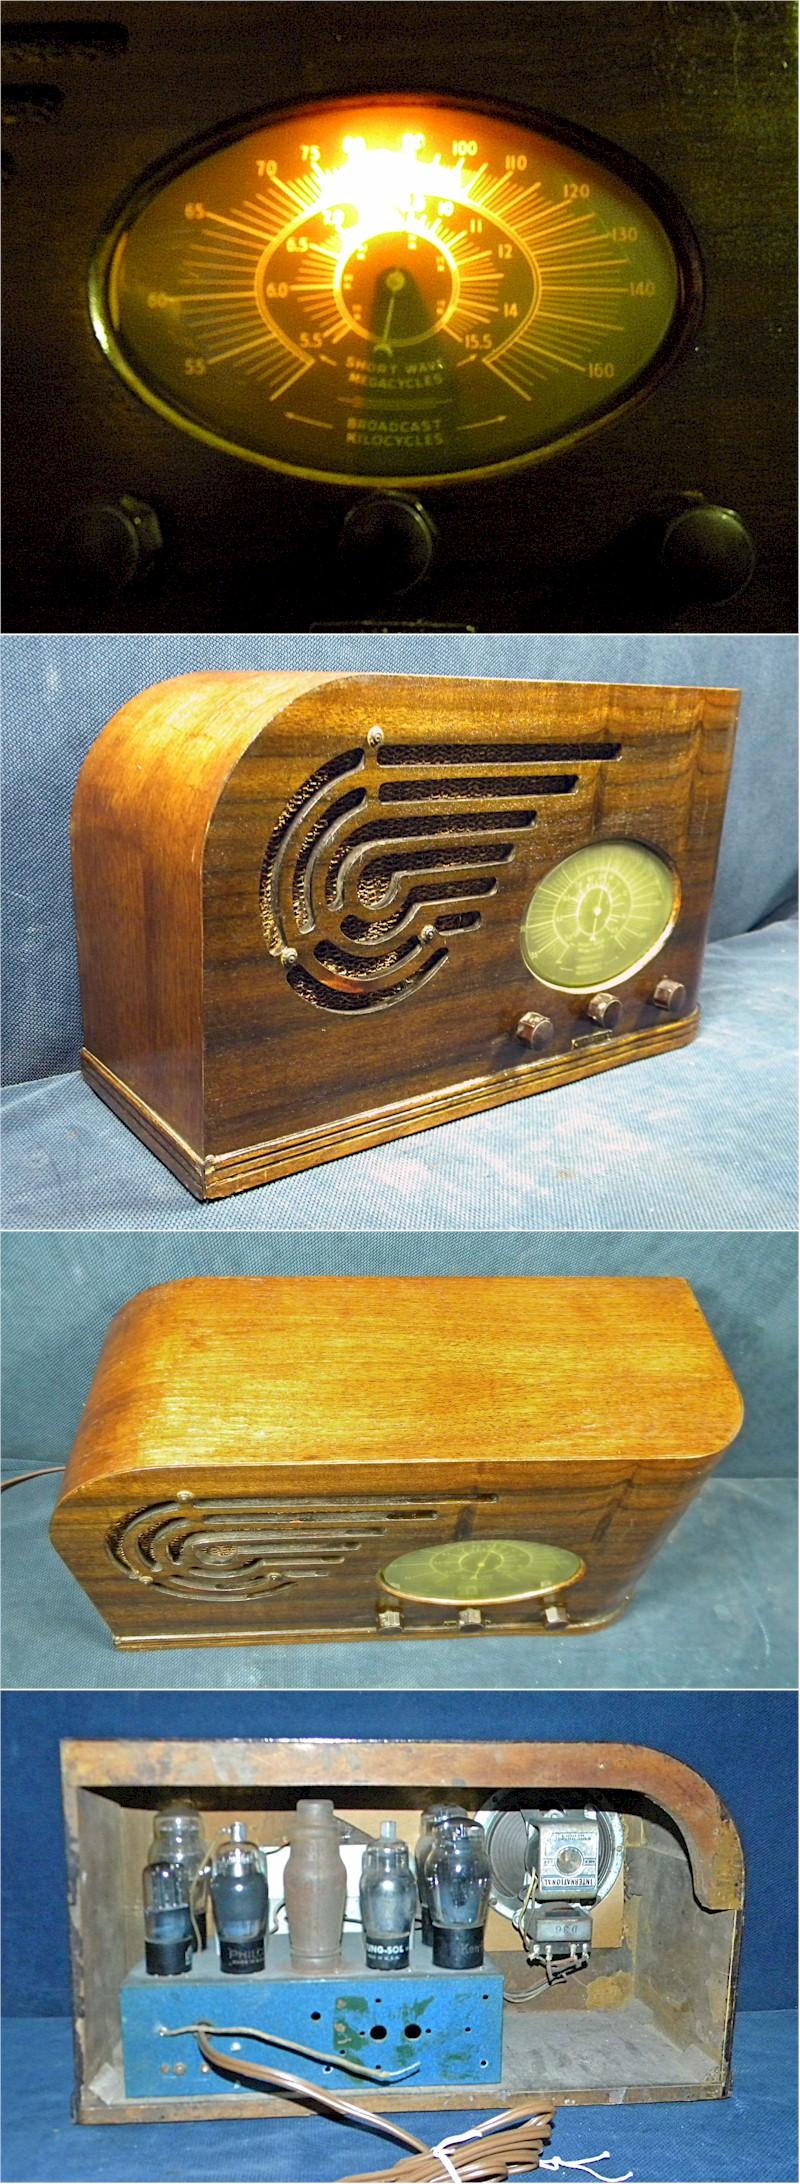 St. Regis (International Kadette) Radio (1937)